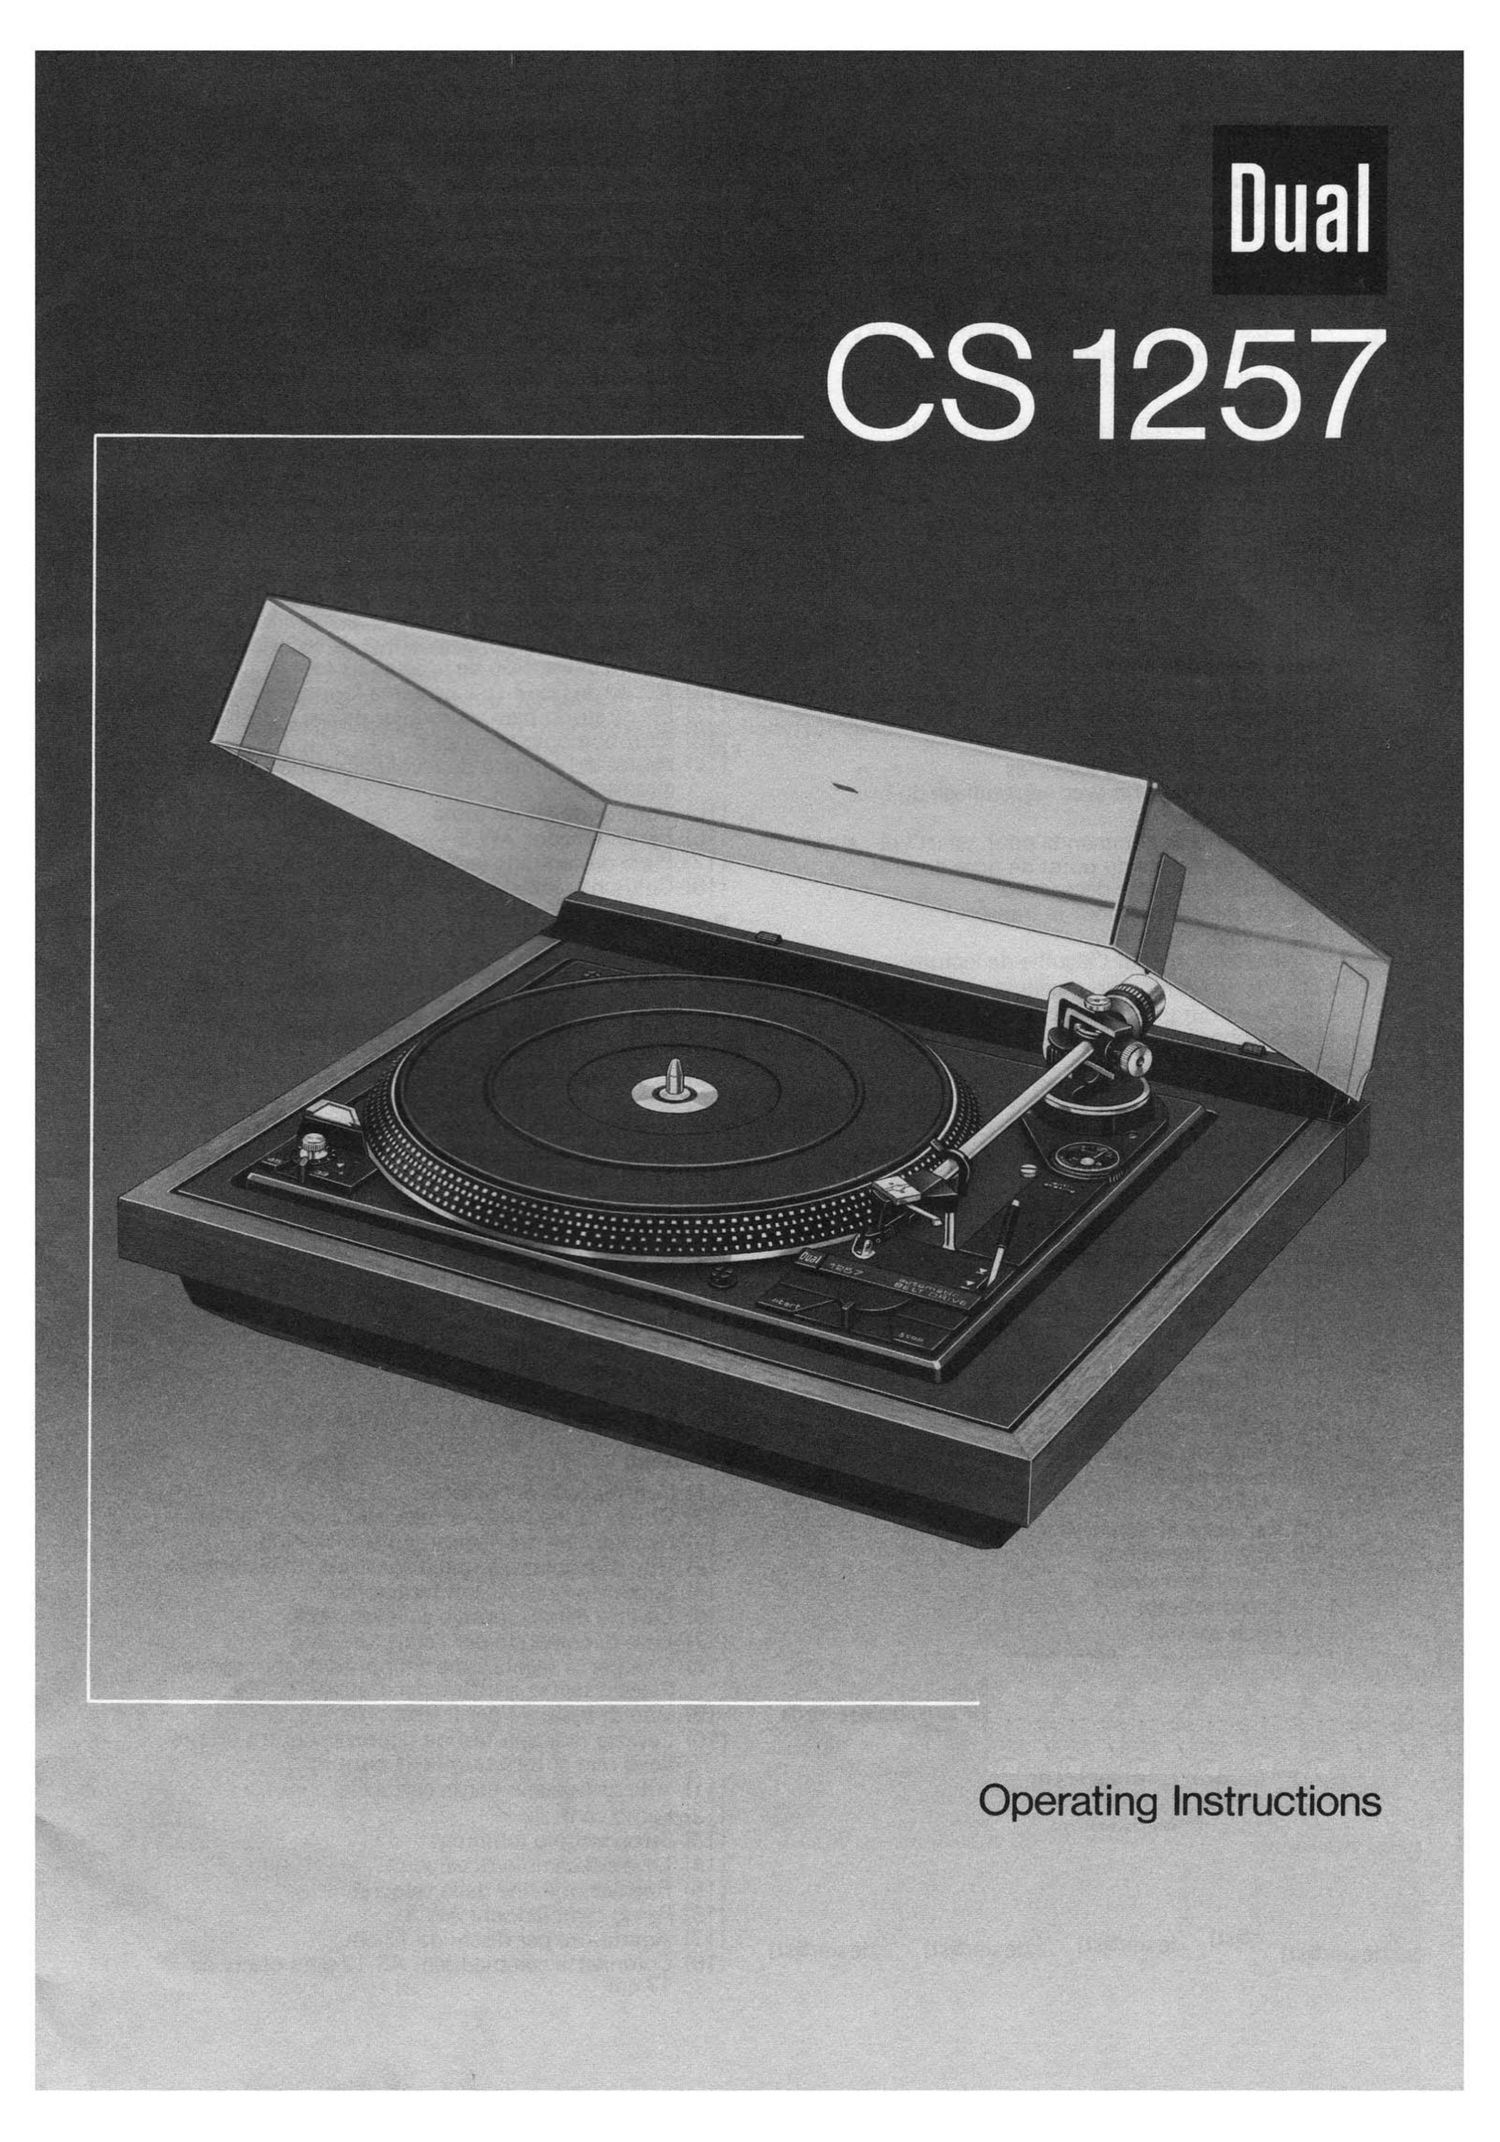 Dual CS 1257 Owners Manual